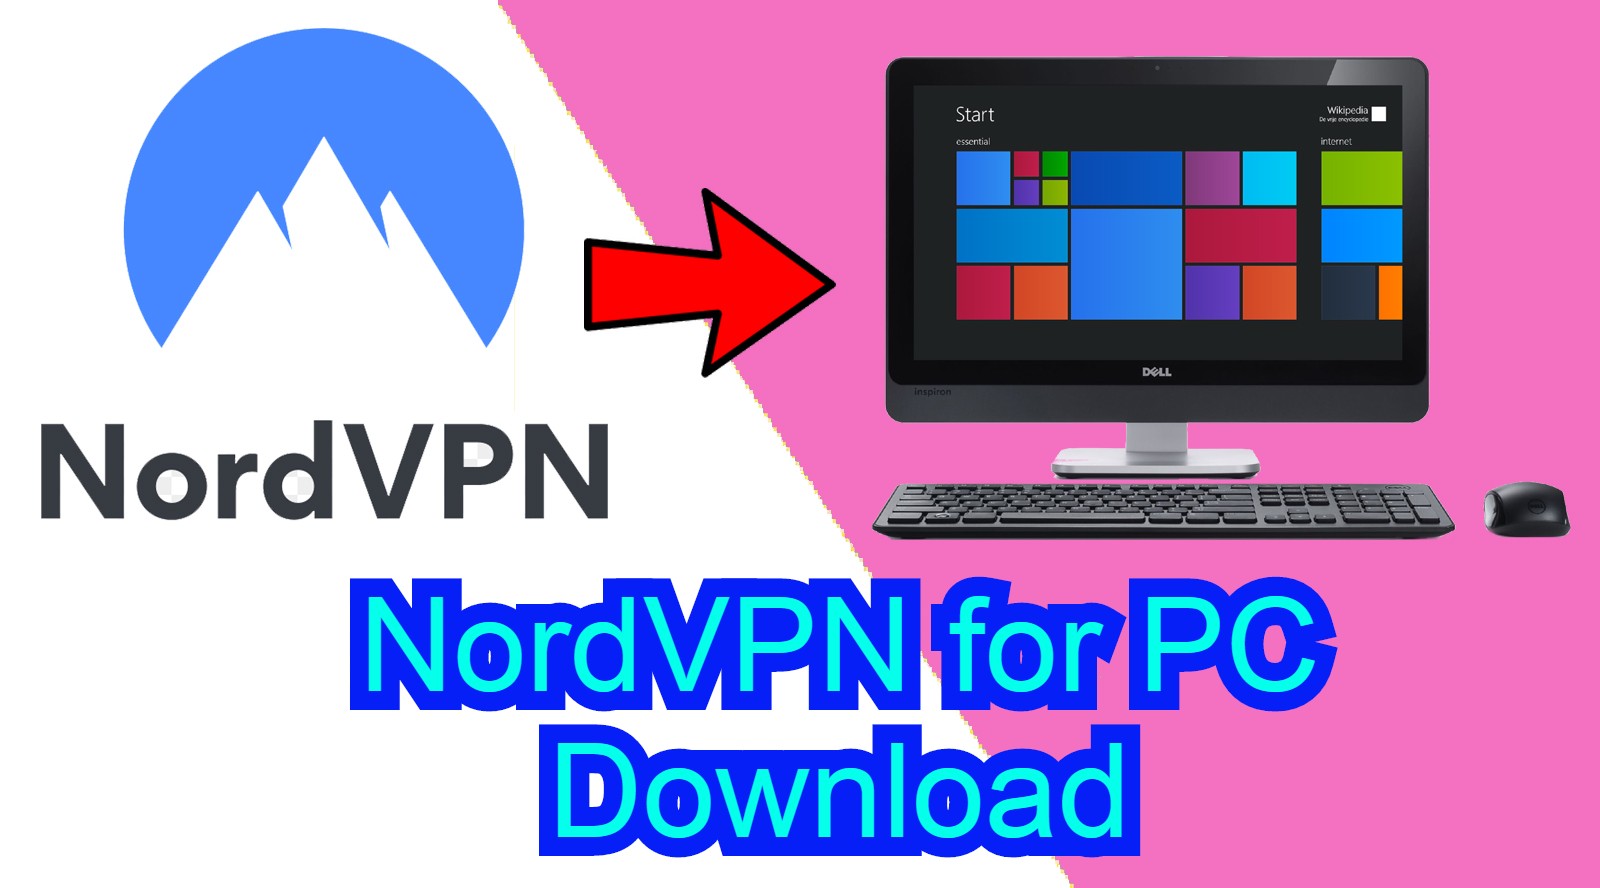 nordvpn old download